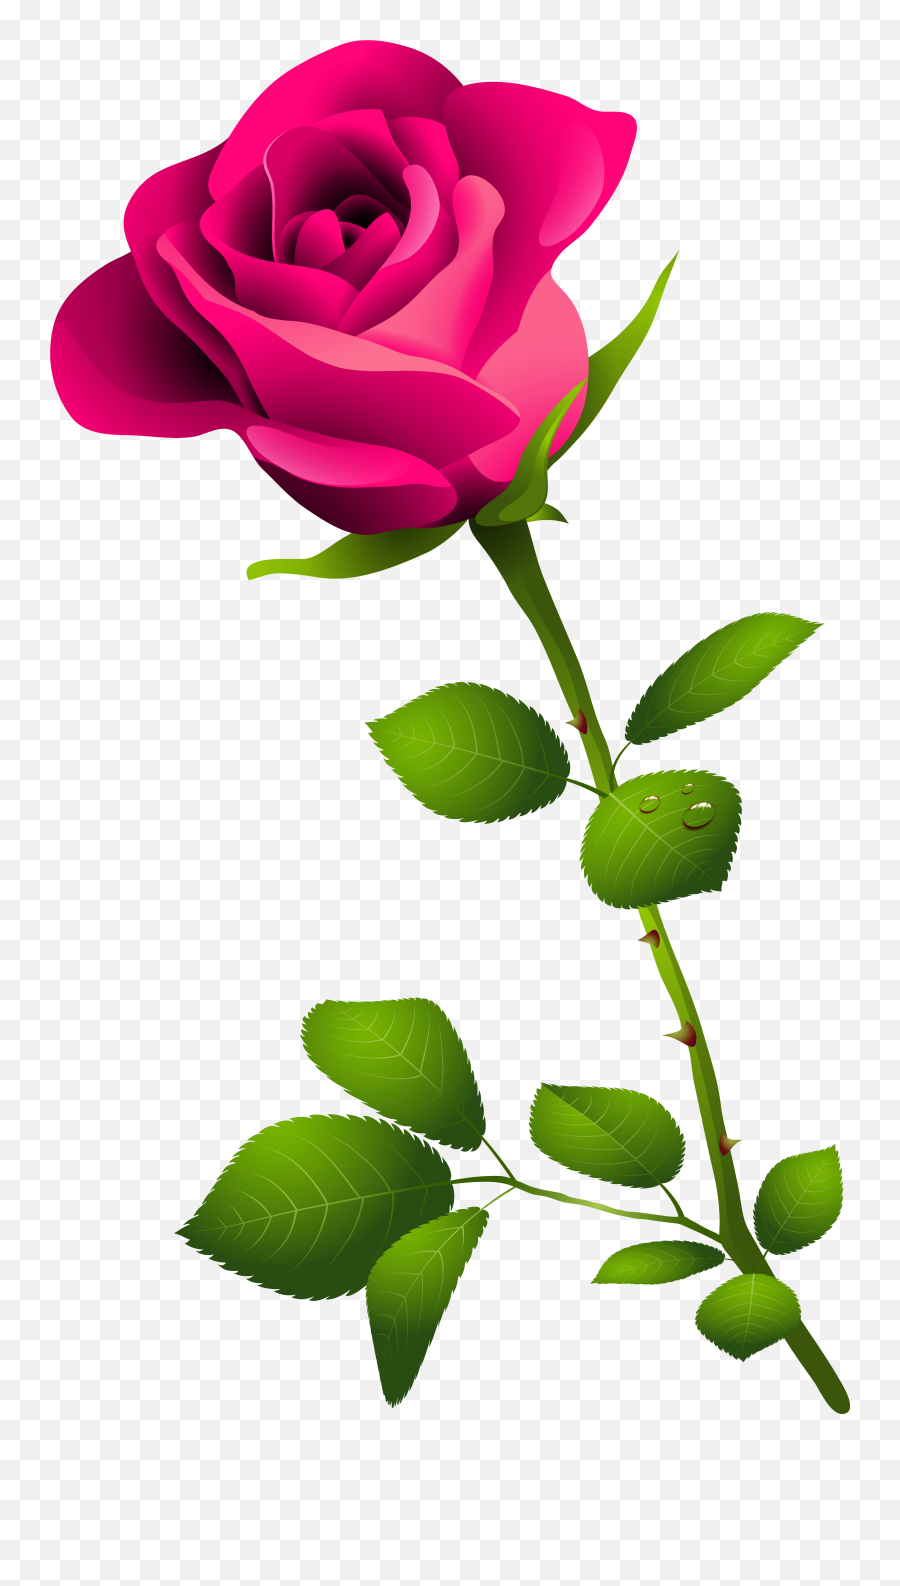 Flower Stem Png Picture - Pink Rose Clipart Transparent Background,Flower Stem Png